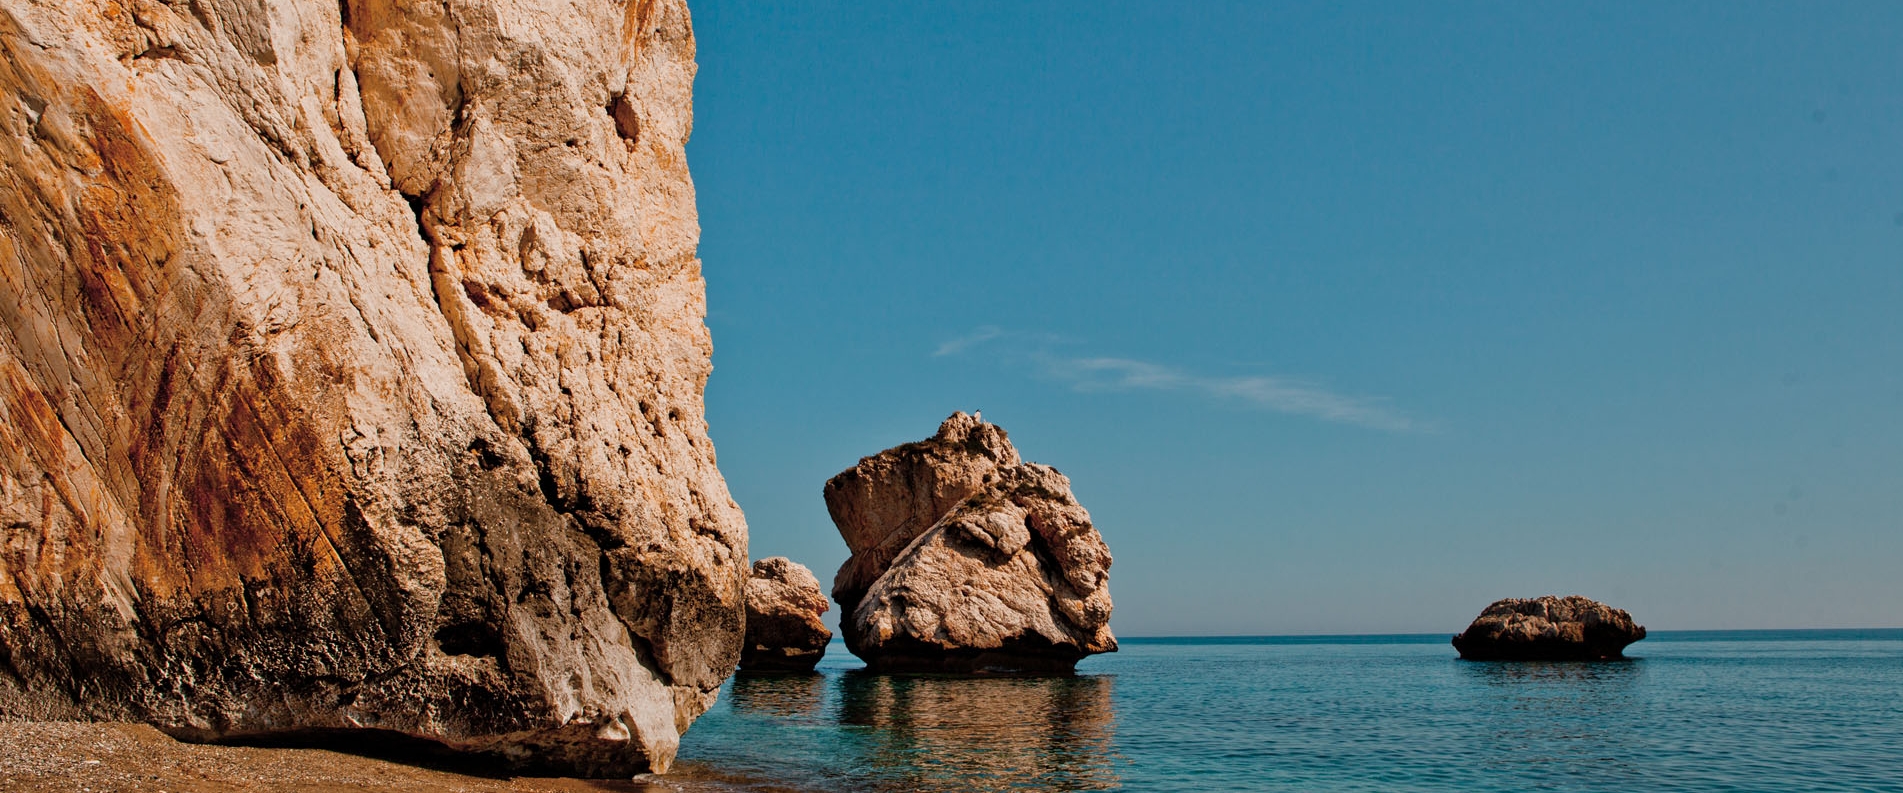 Камень Афродиты: живописный пляж между Лимассолом и Пафосом